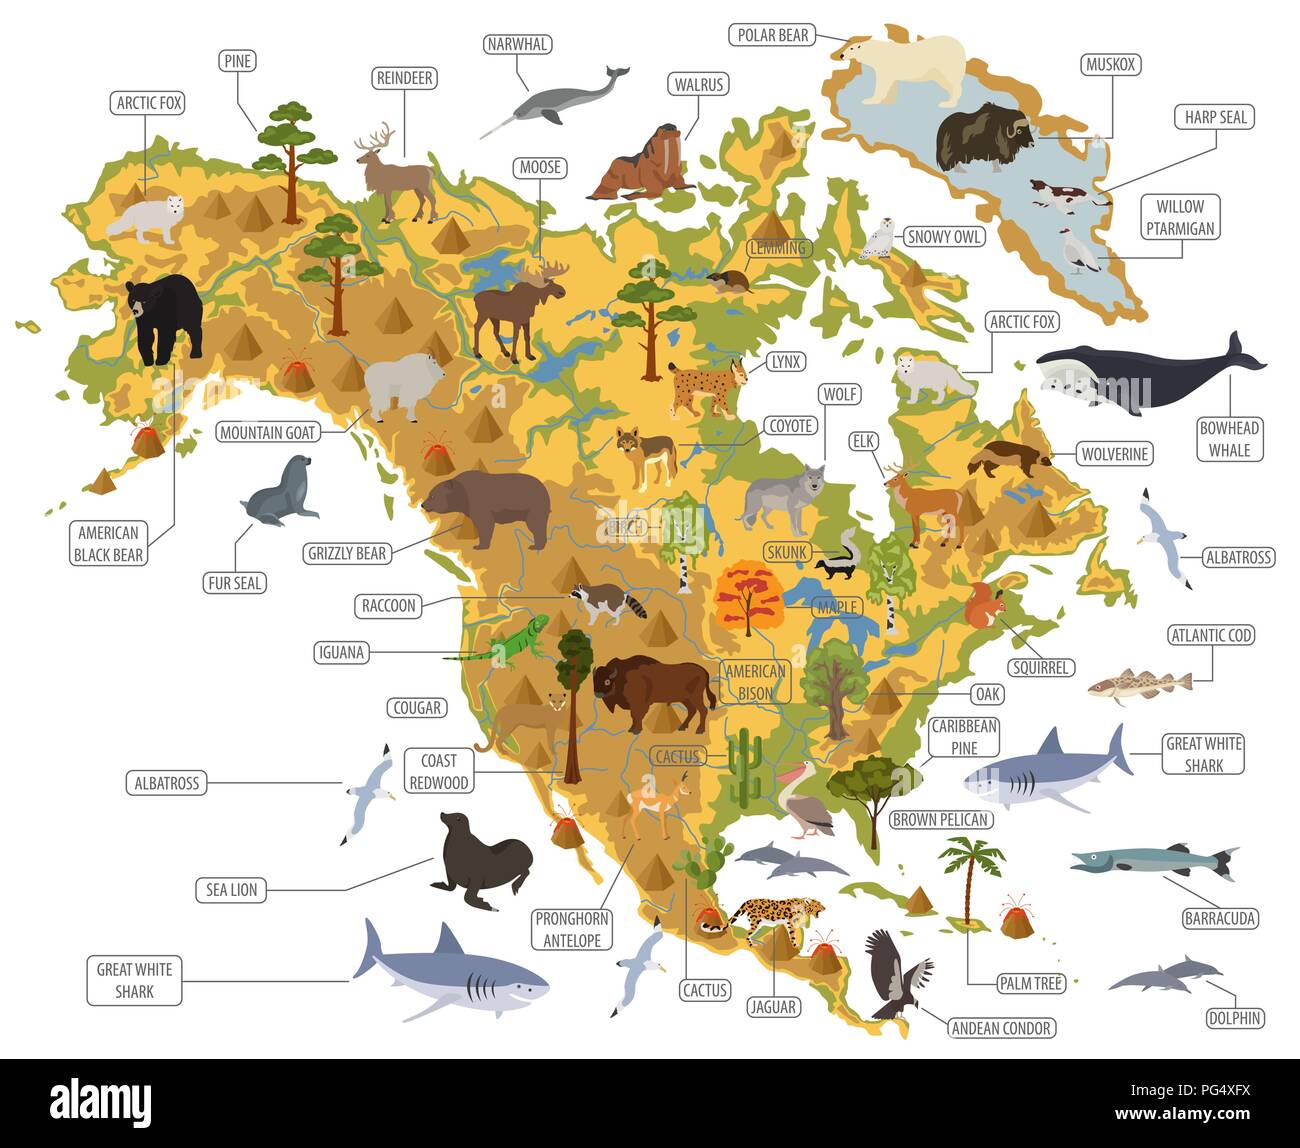 Nordamerika Flora und Fauna Karte, flache Elemente. Tiere, Vögel und Sea Life big eingestellt. Ihre Geographie Infografiken Sammlung aufzubauen. Vektor illustrati Stock Vektor